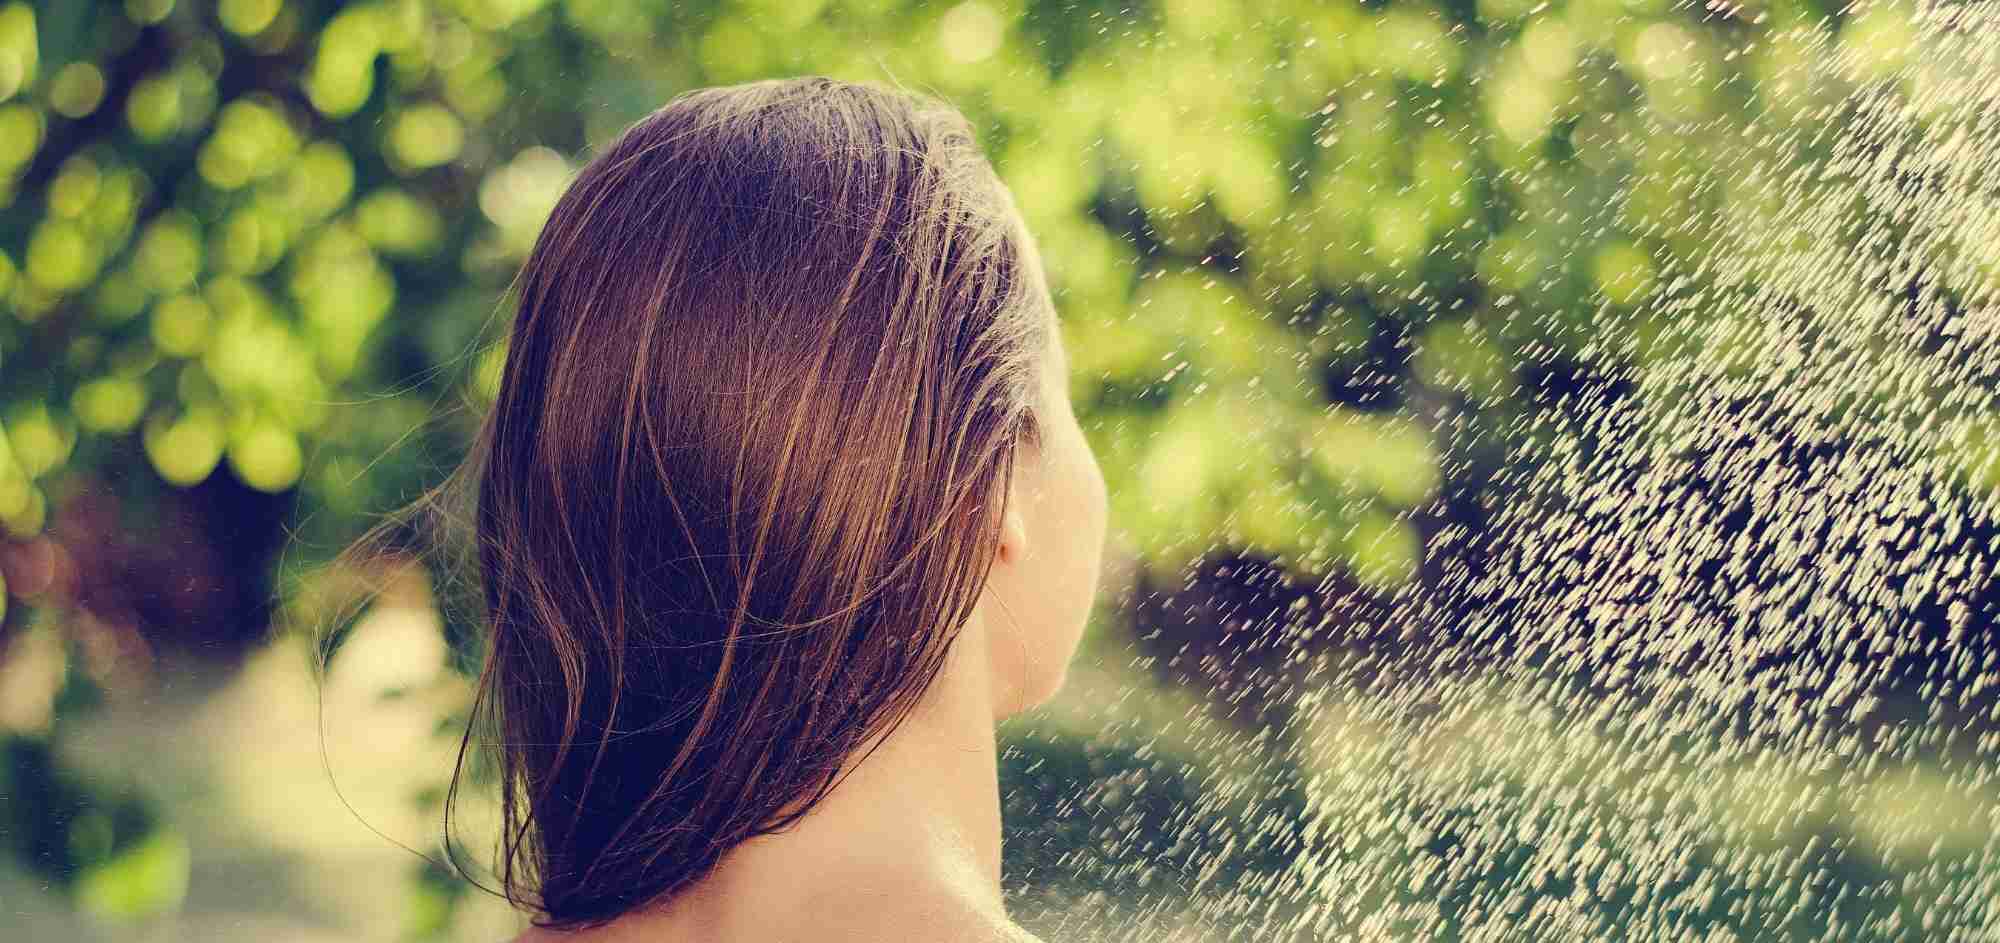 Zahradní sprcha – rychlé a praktické osvěžení